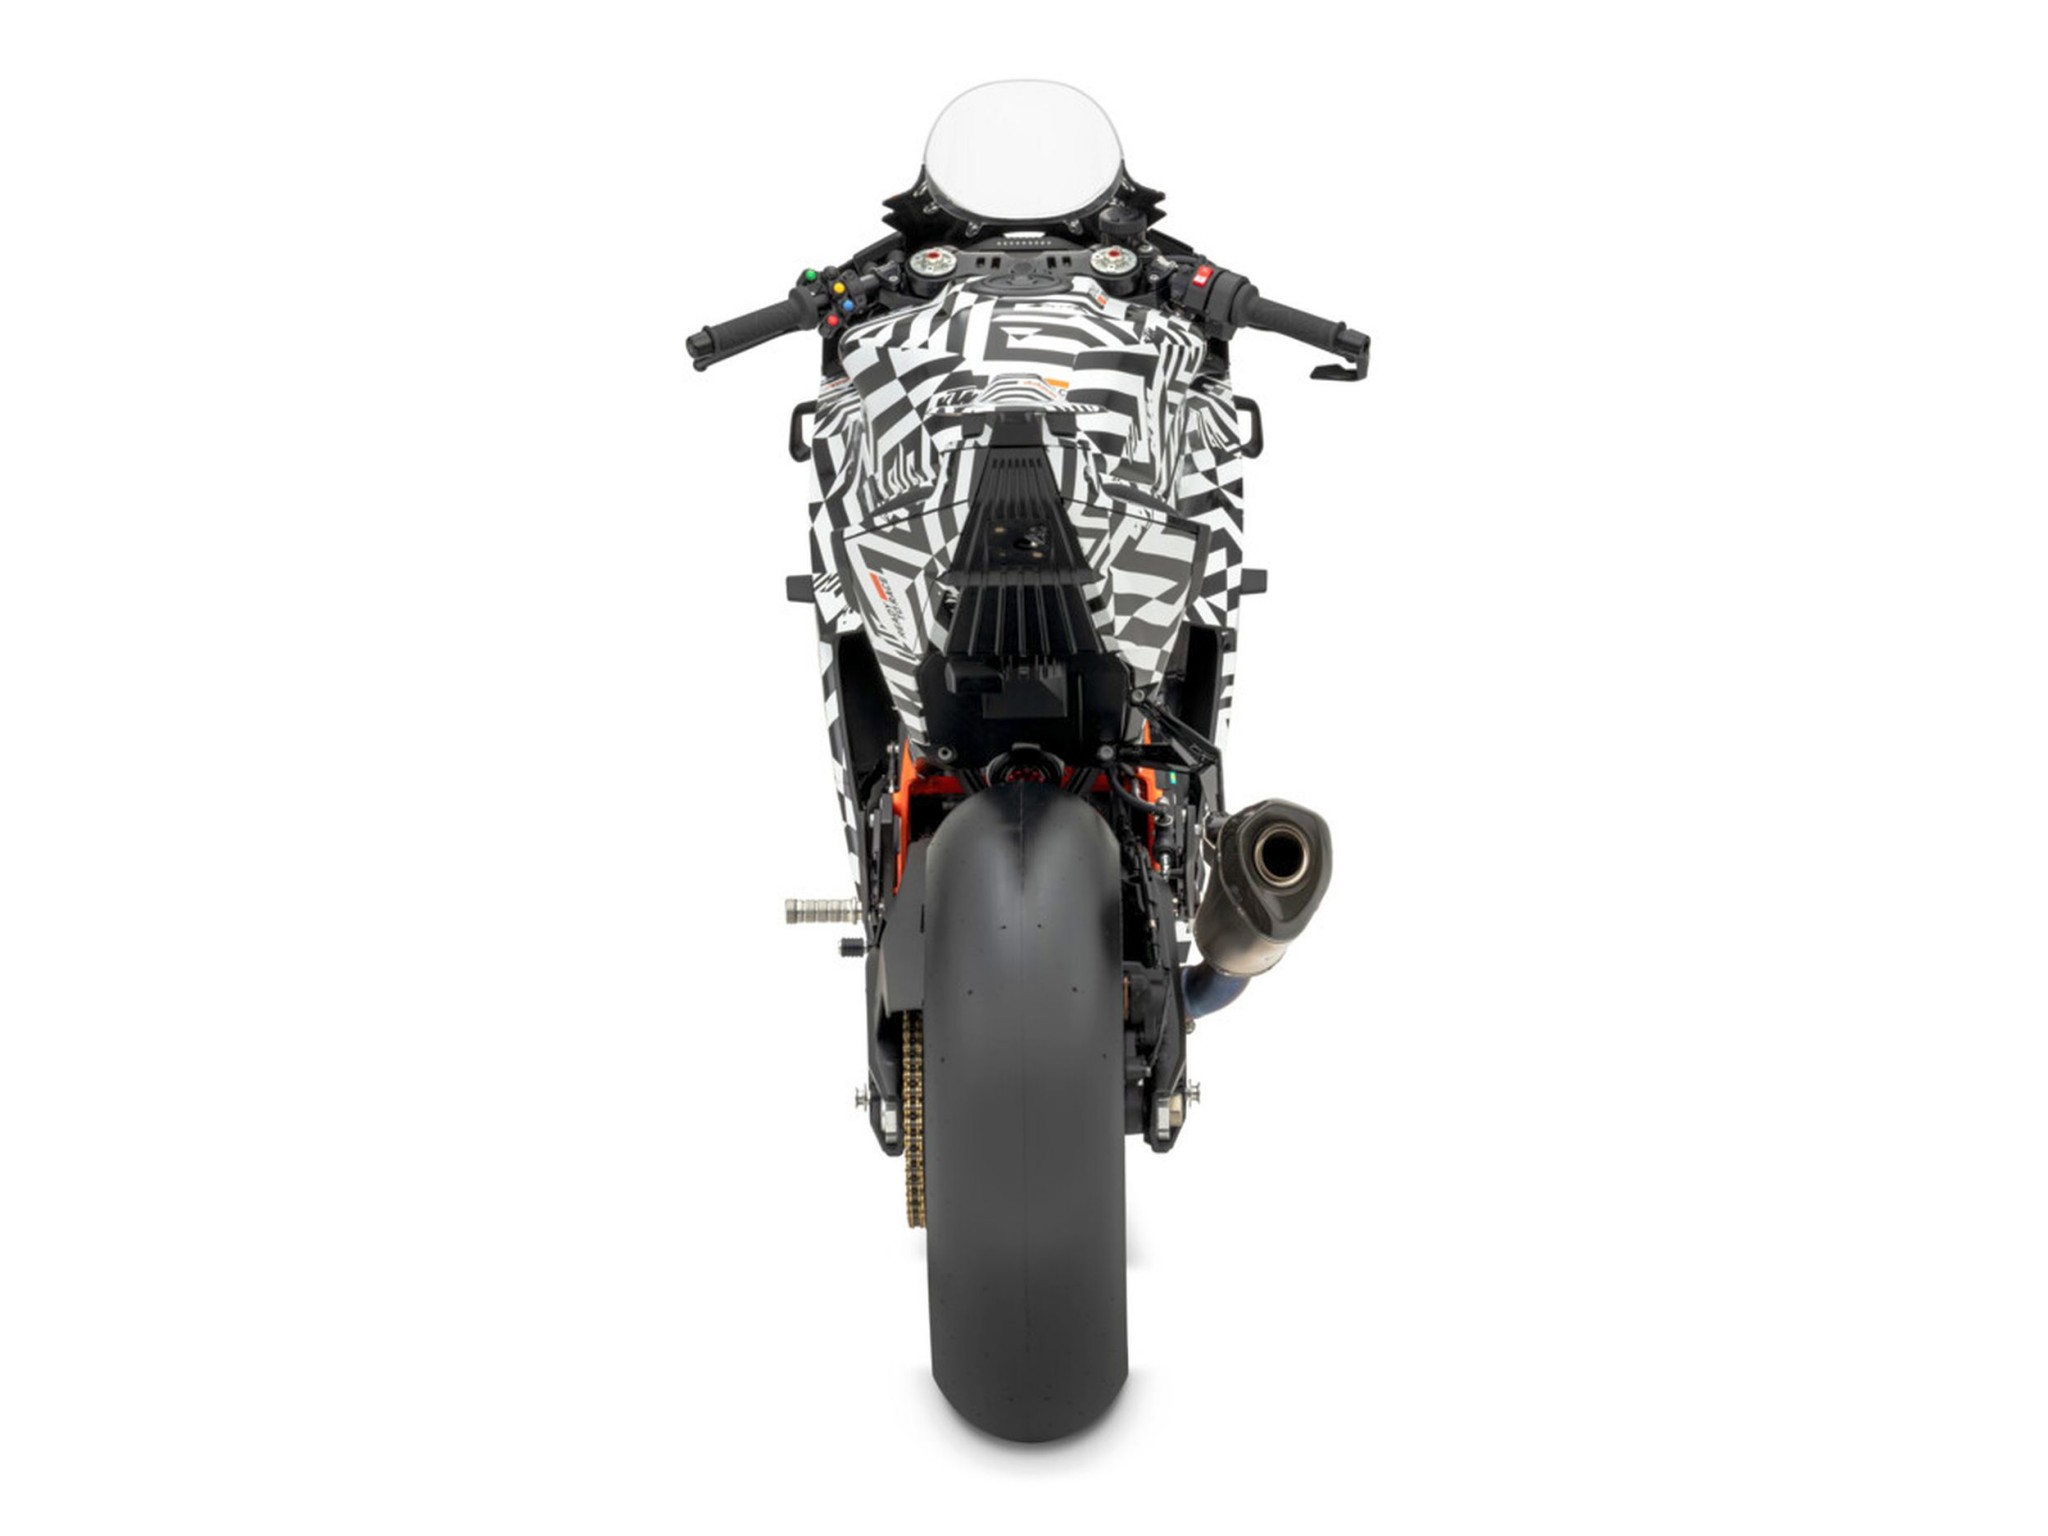 KTM 990 RC R - končno čistokrvni športni motocikel za cesto! - Slika 53